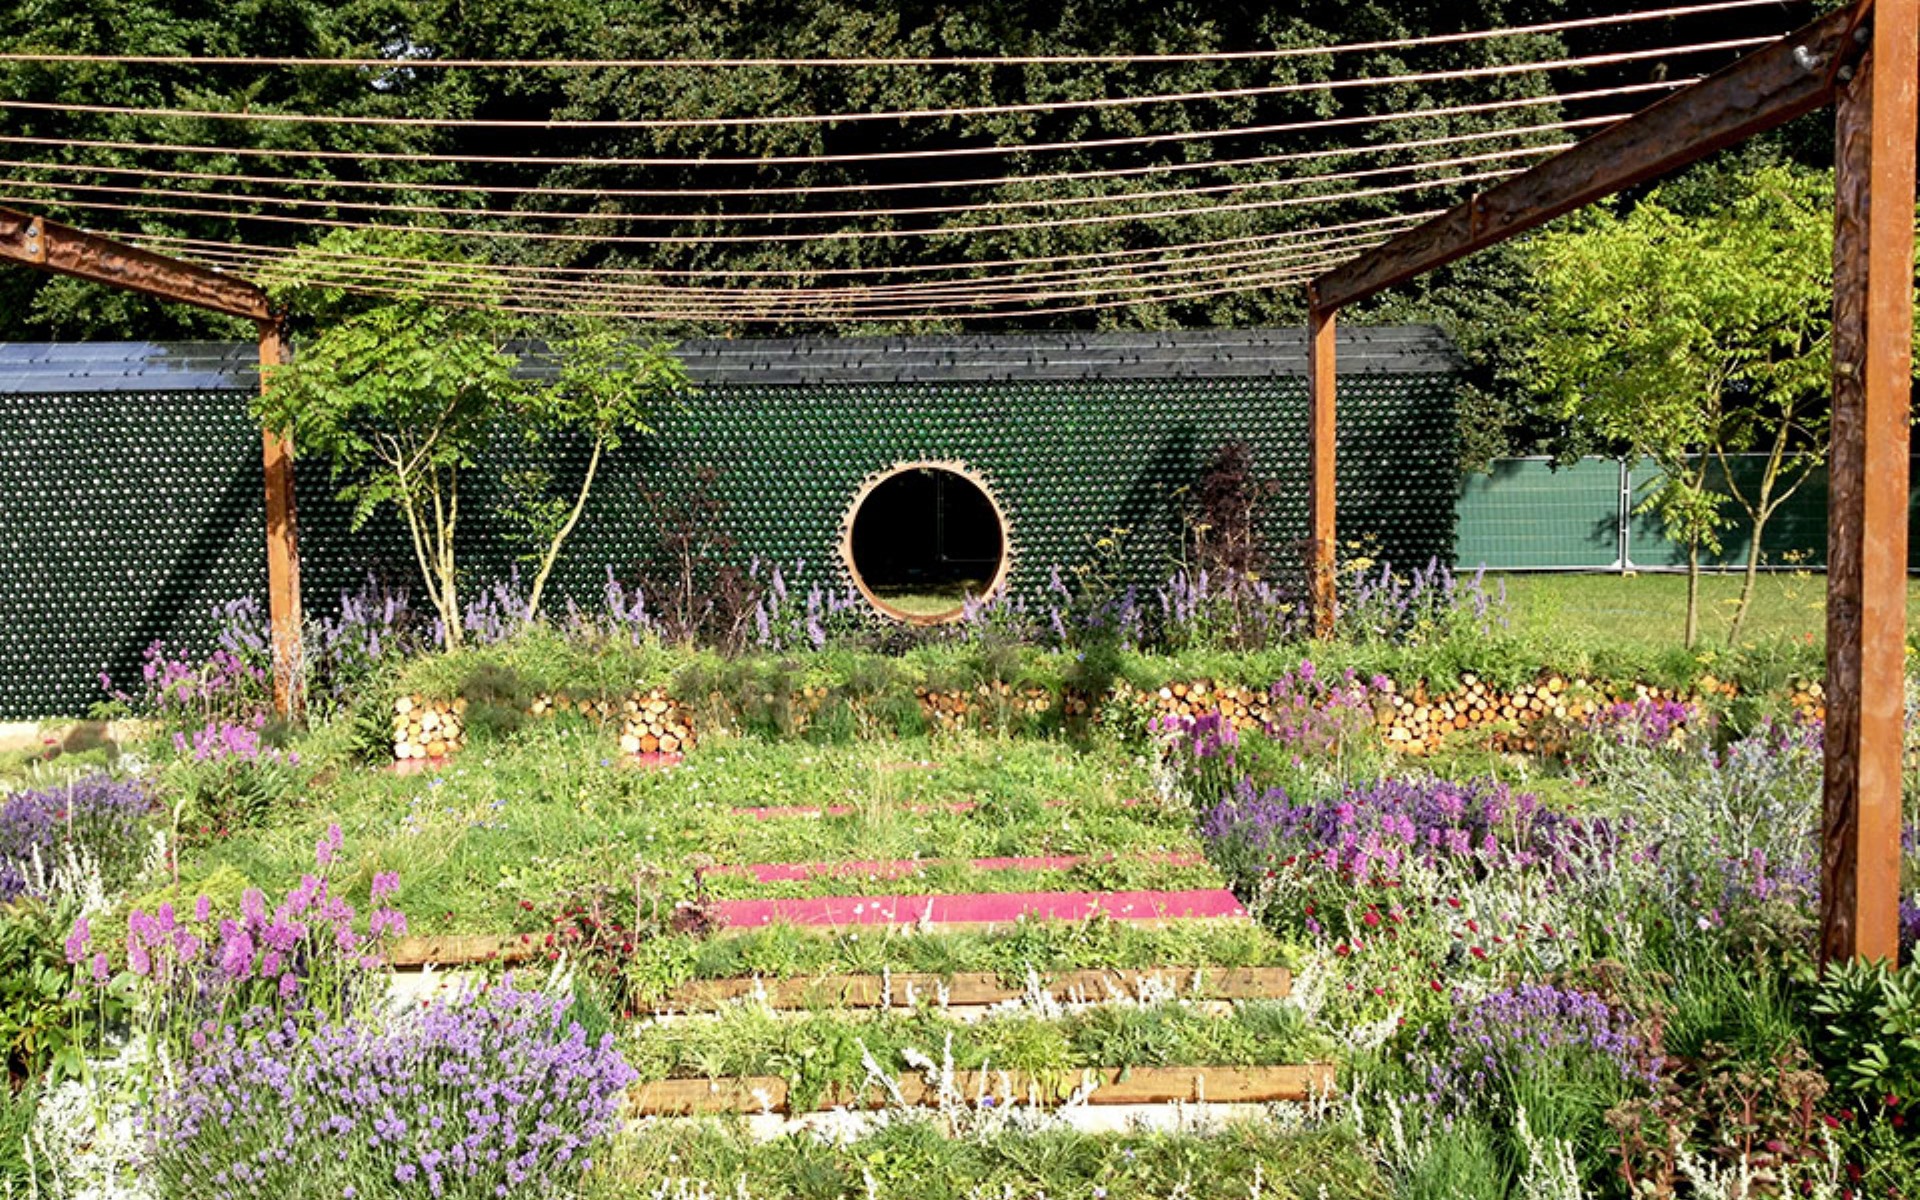 rhs garden finalist sustainable garden design